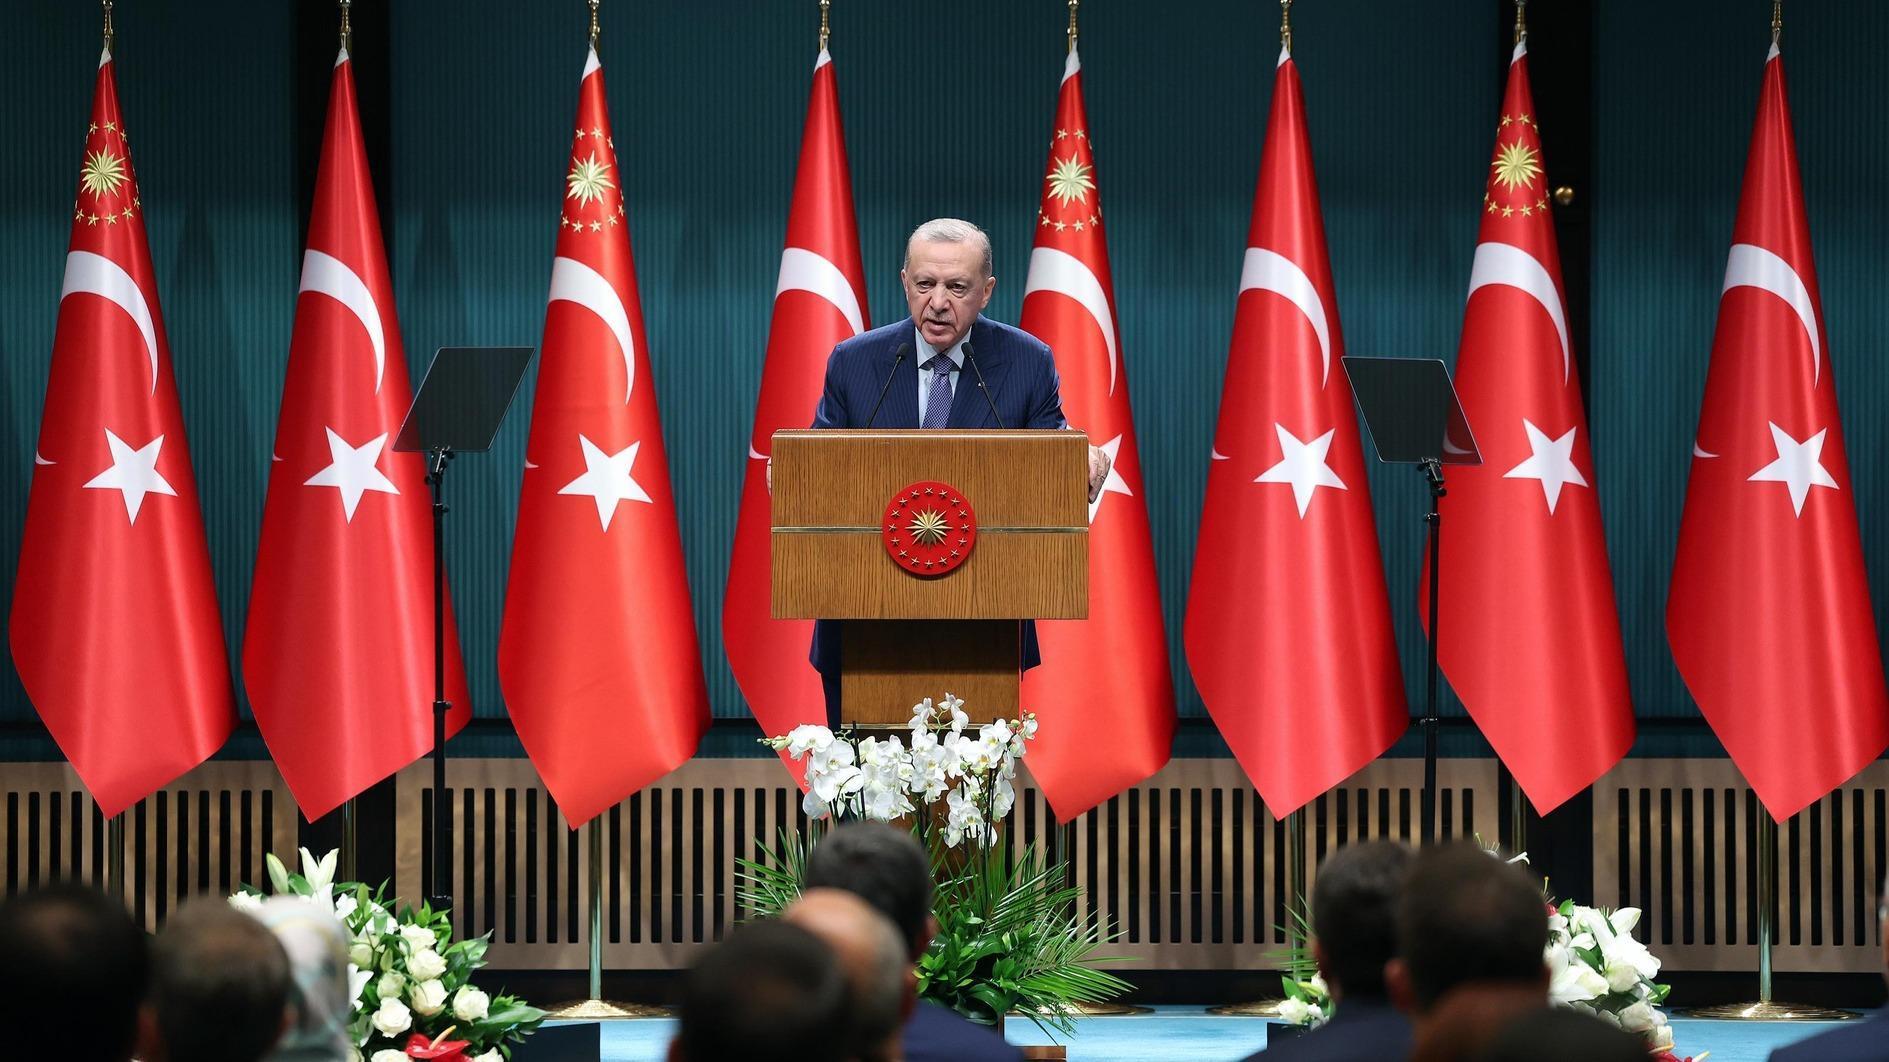 Erdoğan herhaalt zijn belofte om de inflatie tot enkele cijfers terug te brengen